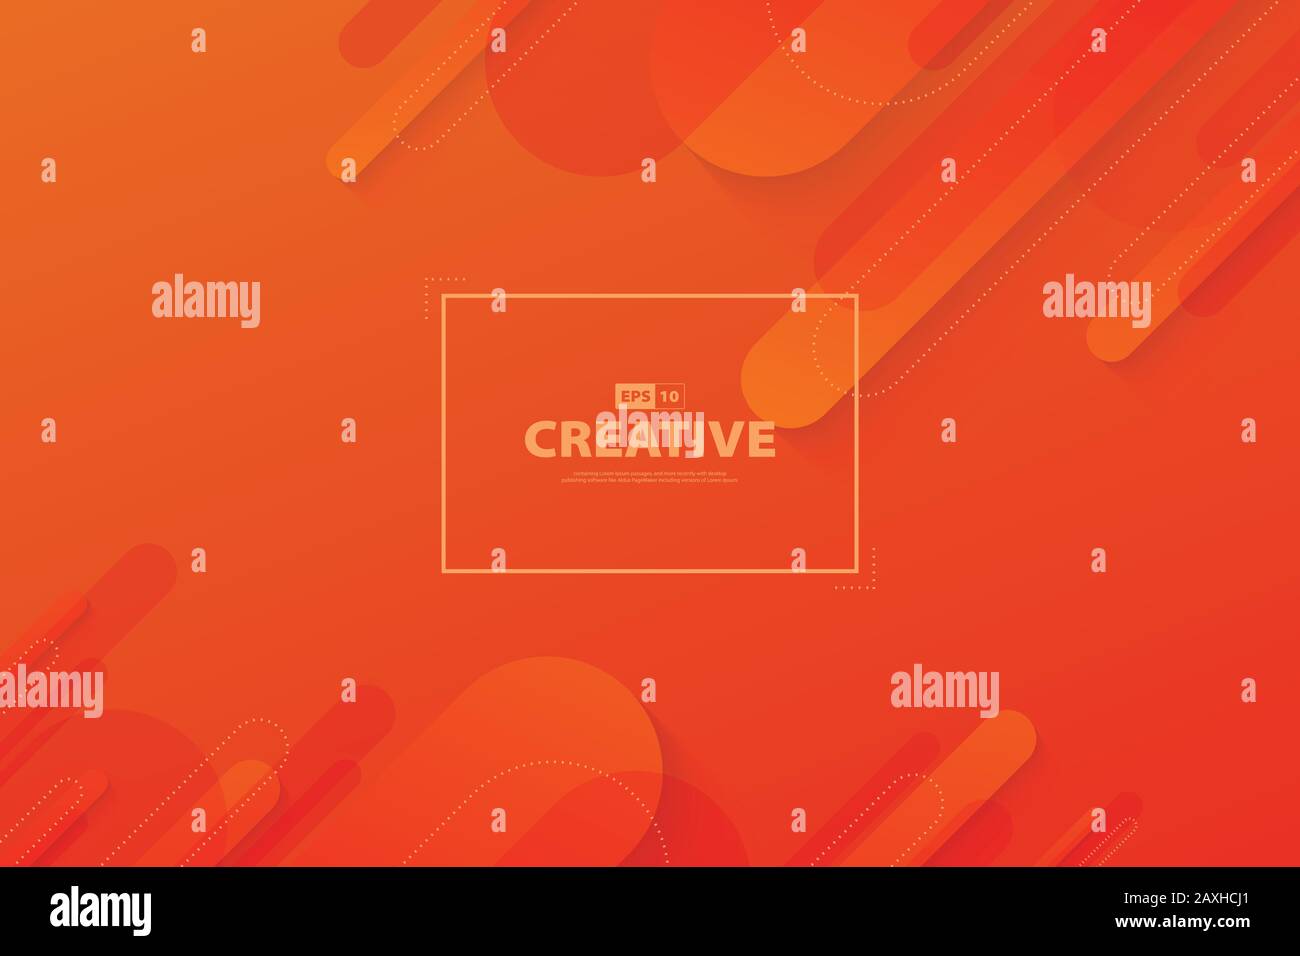 Dégradé abstrait couleur orange et rouge élément de mouvement fluide déplacement page d'accueil arrière-plan. À utiliser pour la publicité, l'affiche, les œuvres d'art, la conception de modèles, l'impression. Ill Illustration de Vecteur